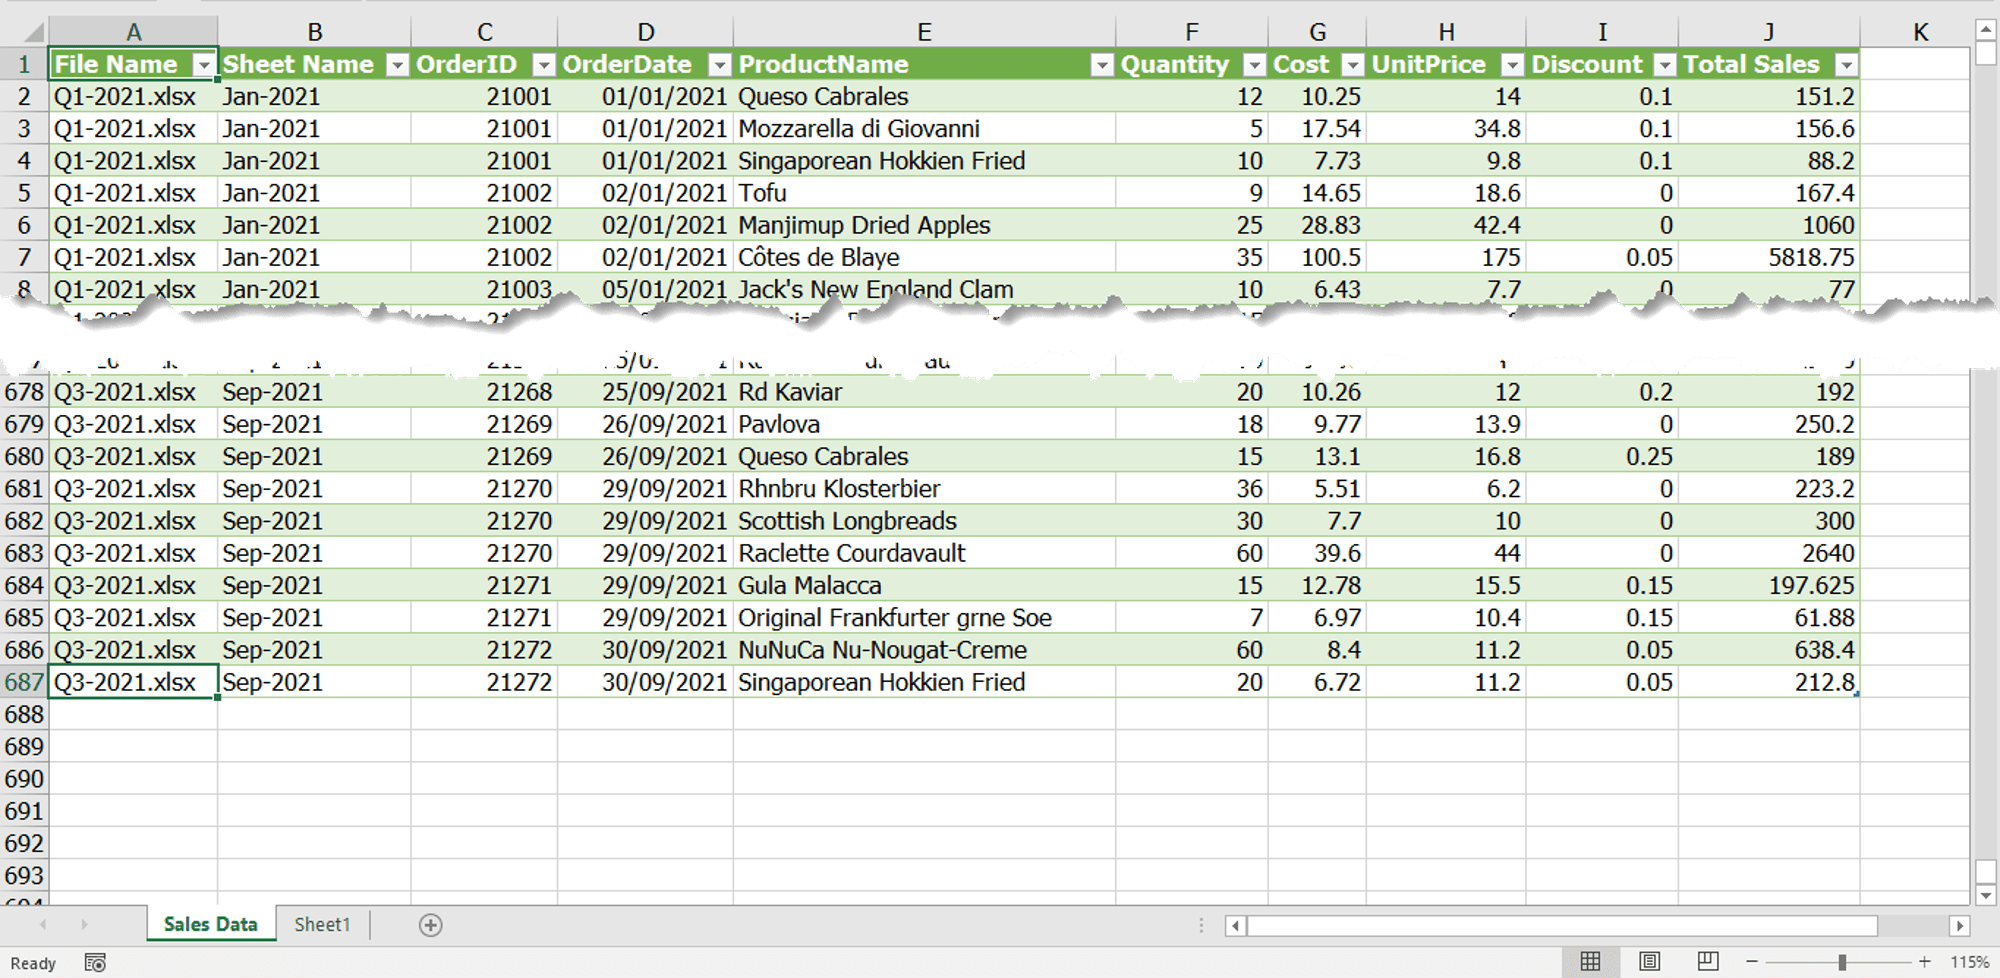 ผลลัพธ์ของการรวมไฟล์ Excel หลายไฟล์ หลายชีท ด้วยการใช้เครื่อง Power Query